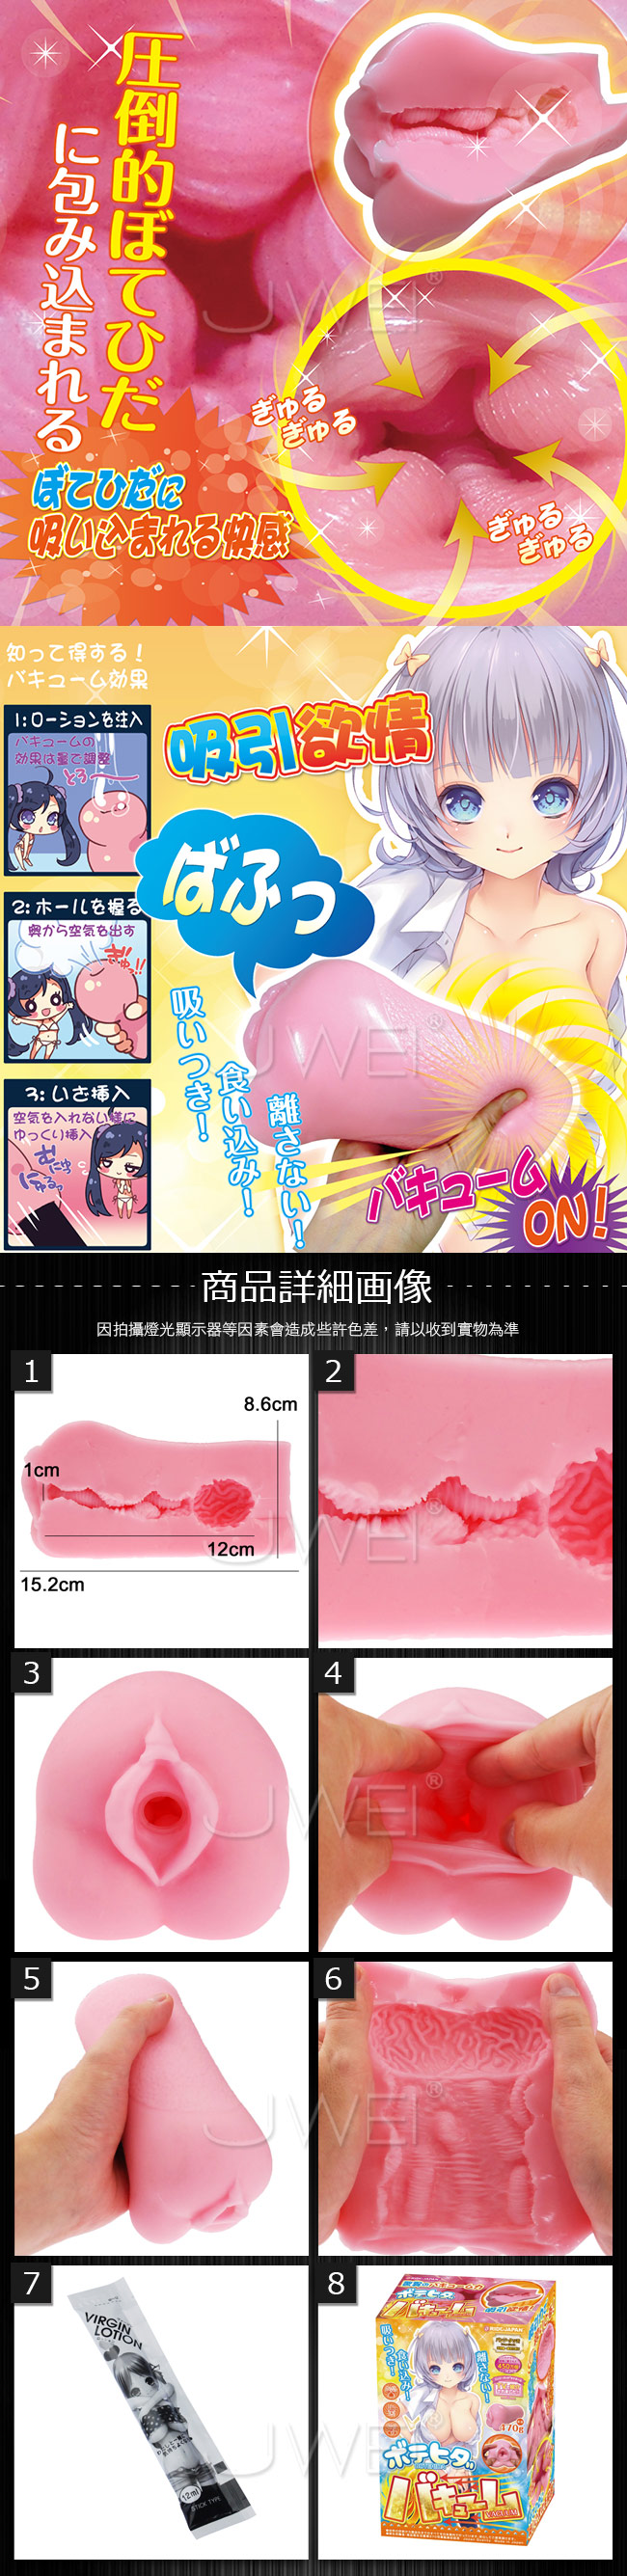 【附潤滑液】【日本NPG原廠公司貨】ぼてひだバキューム 超強真空吸引慾情自慰器